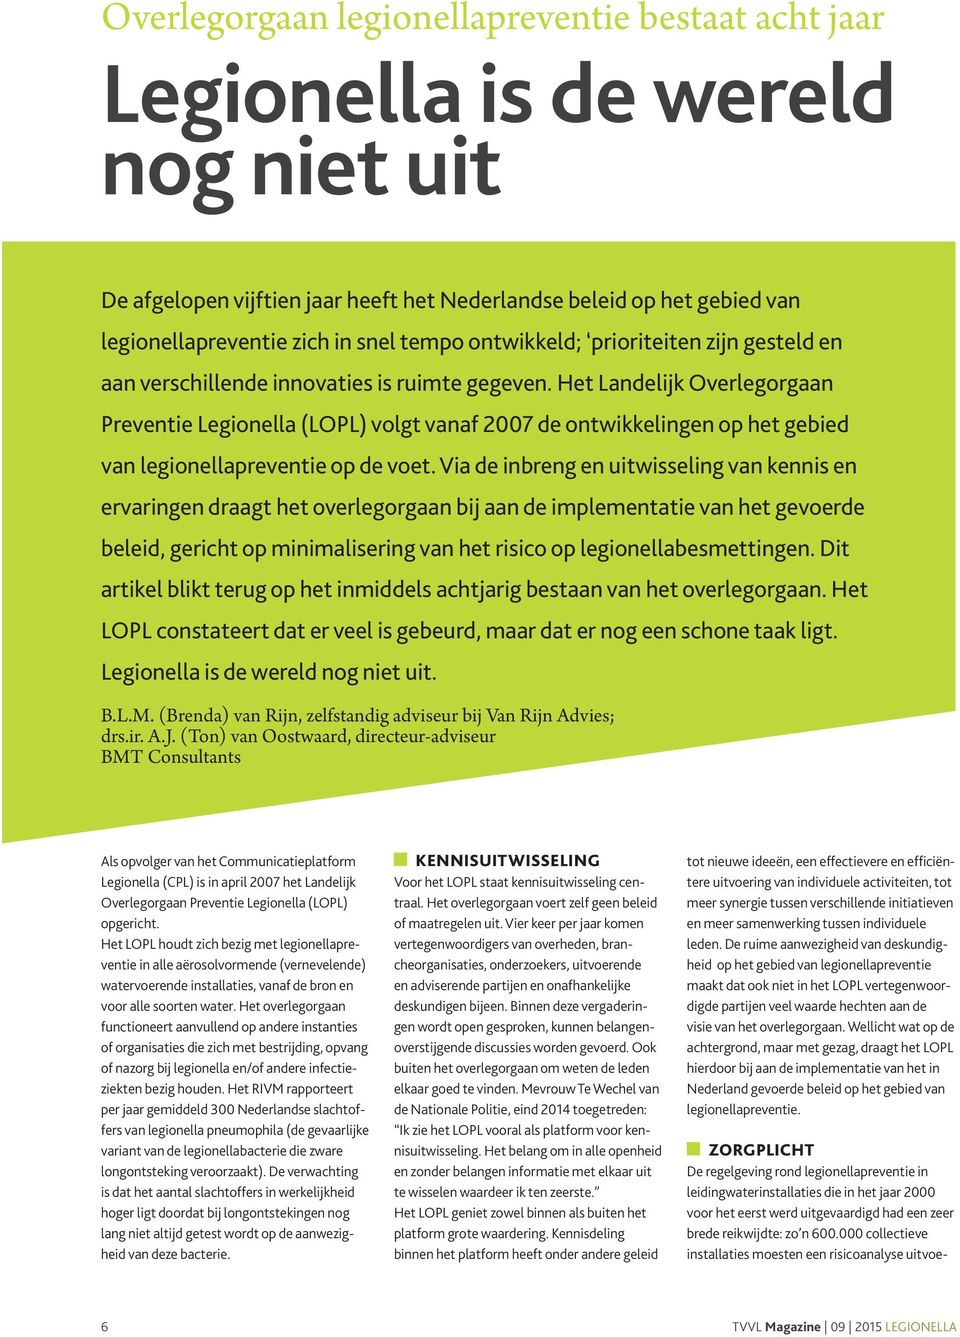 Het Landelijk Overlegorgaan Preventie Legionella (LOPL) volgt vanaf 2007 de ontwikkelingen op het gebied van legionellapreventie op de voet.